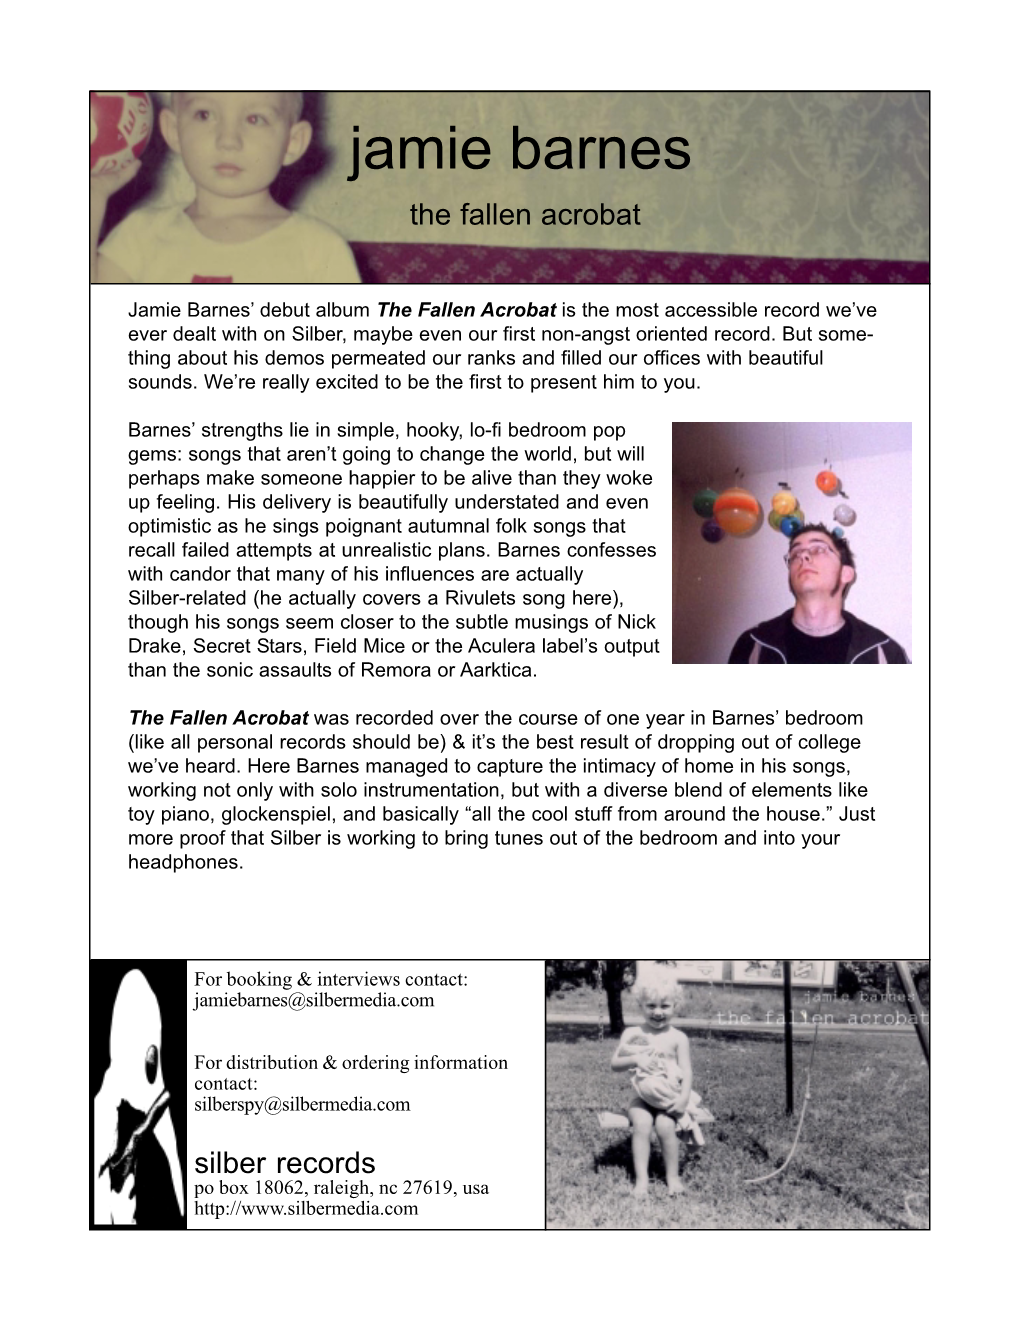 Jamie Barnes the Fallen Acrobat